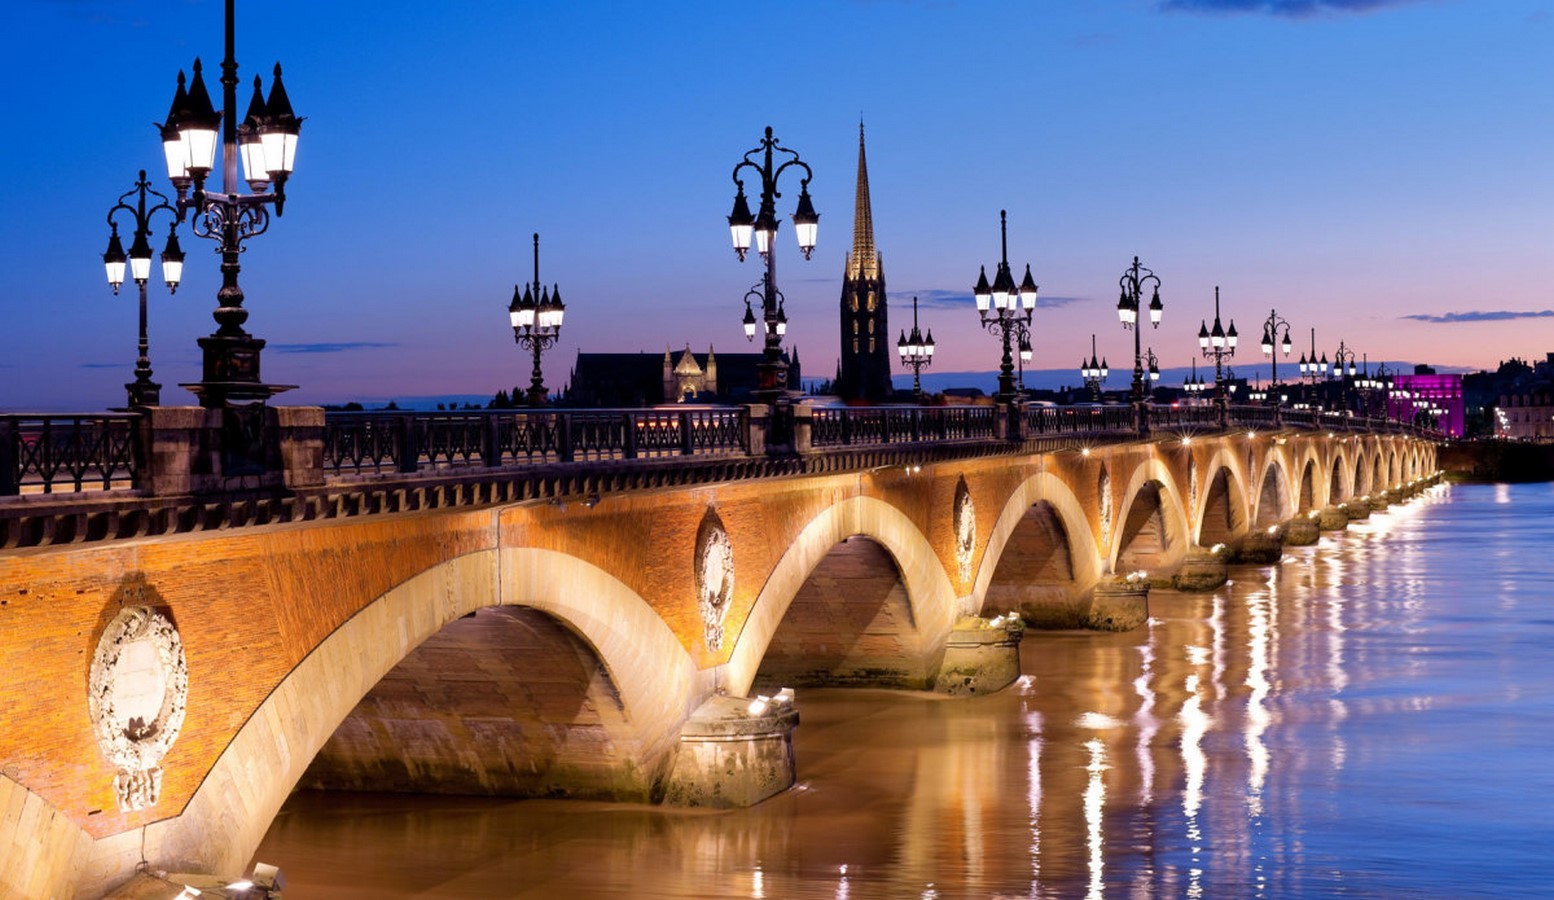 10 Famous structures of Bordeaux, France - Sheet2